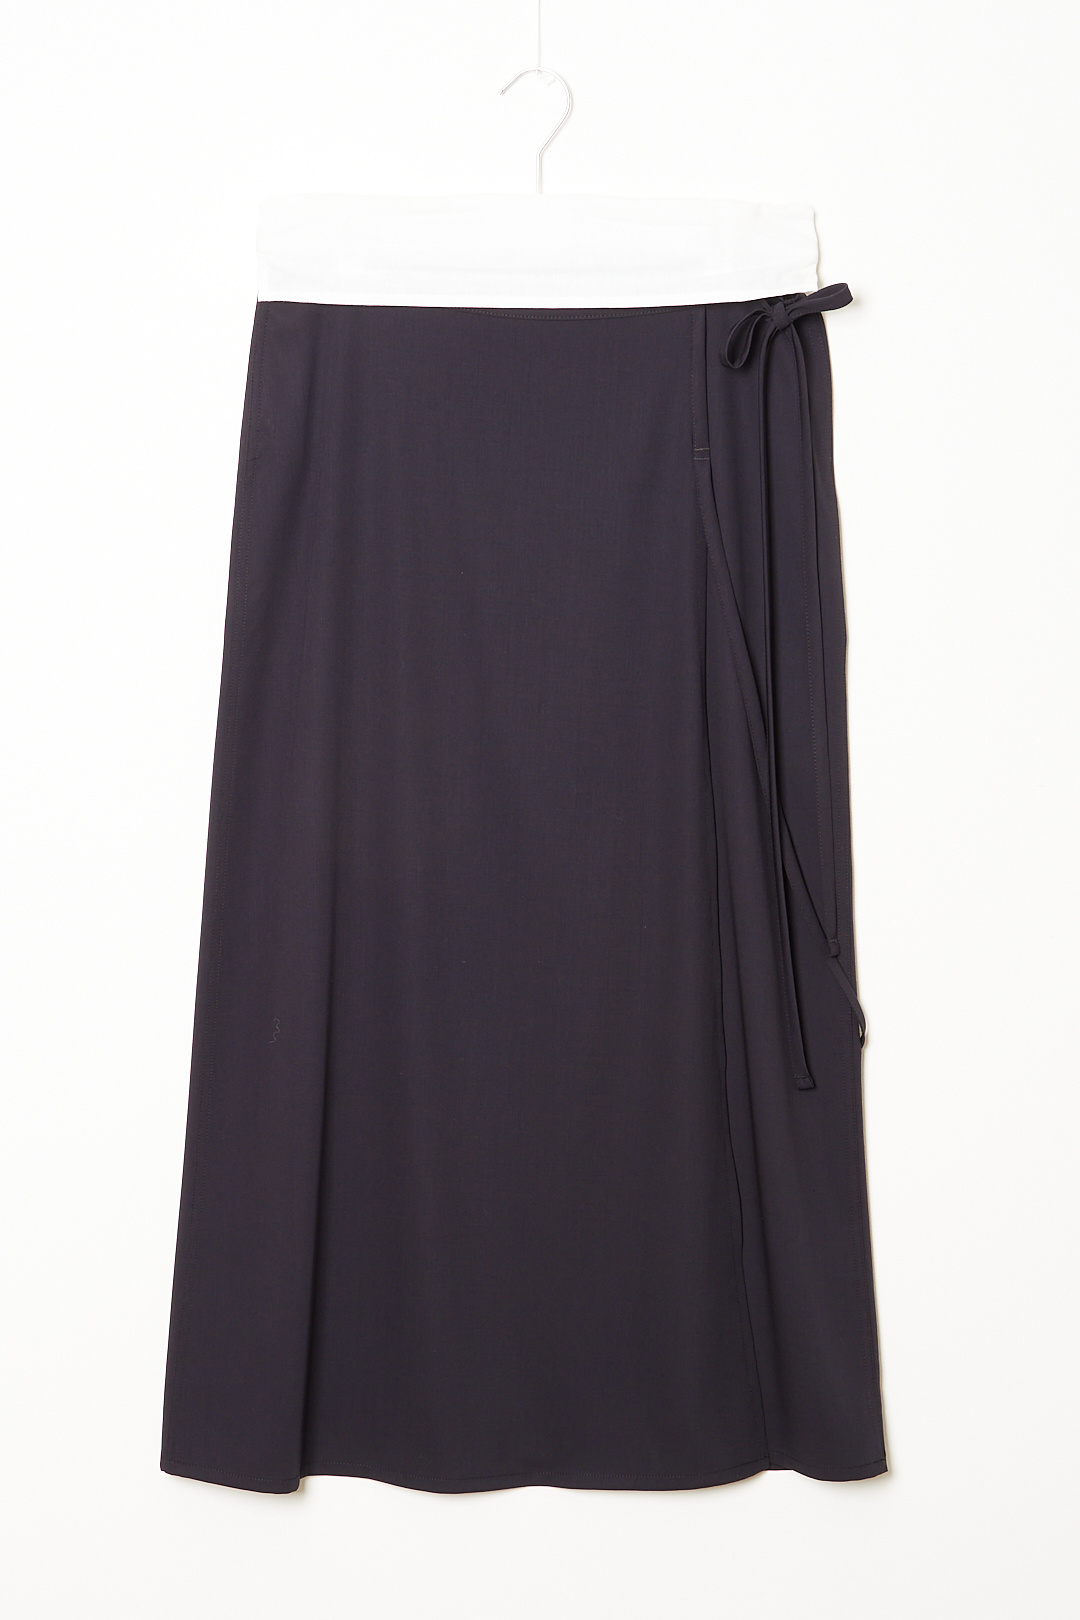 Lemaire - Light tailored skirt